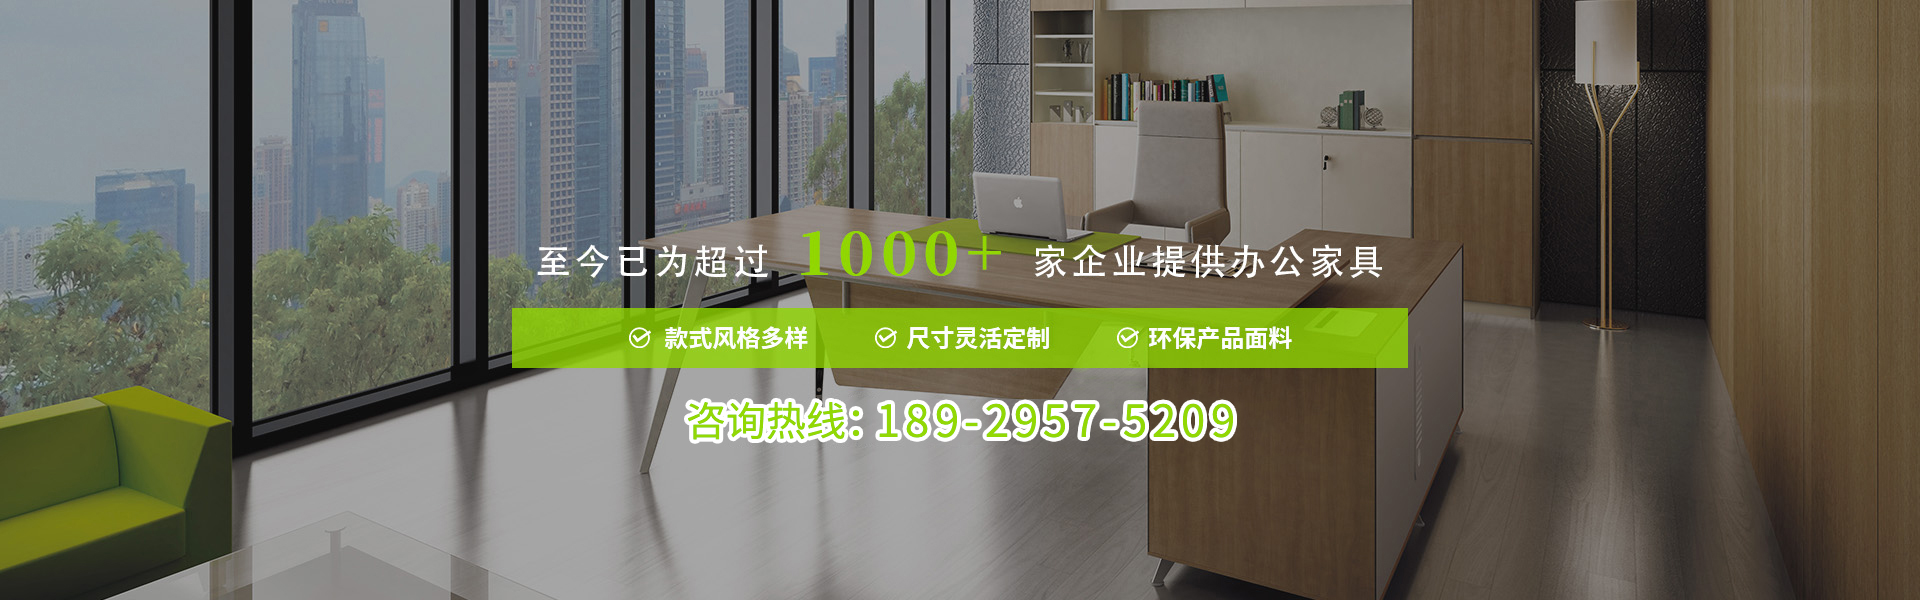 广州办公家具定制找乐纷家具,服务超1000+企业